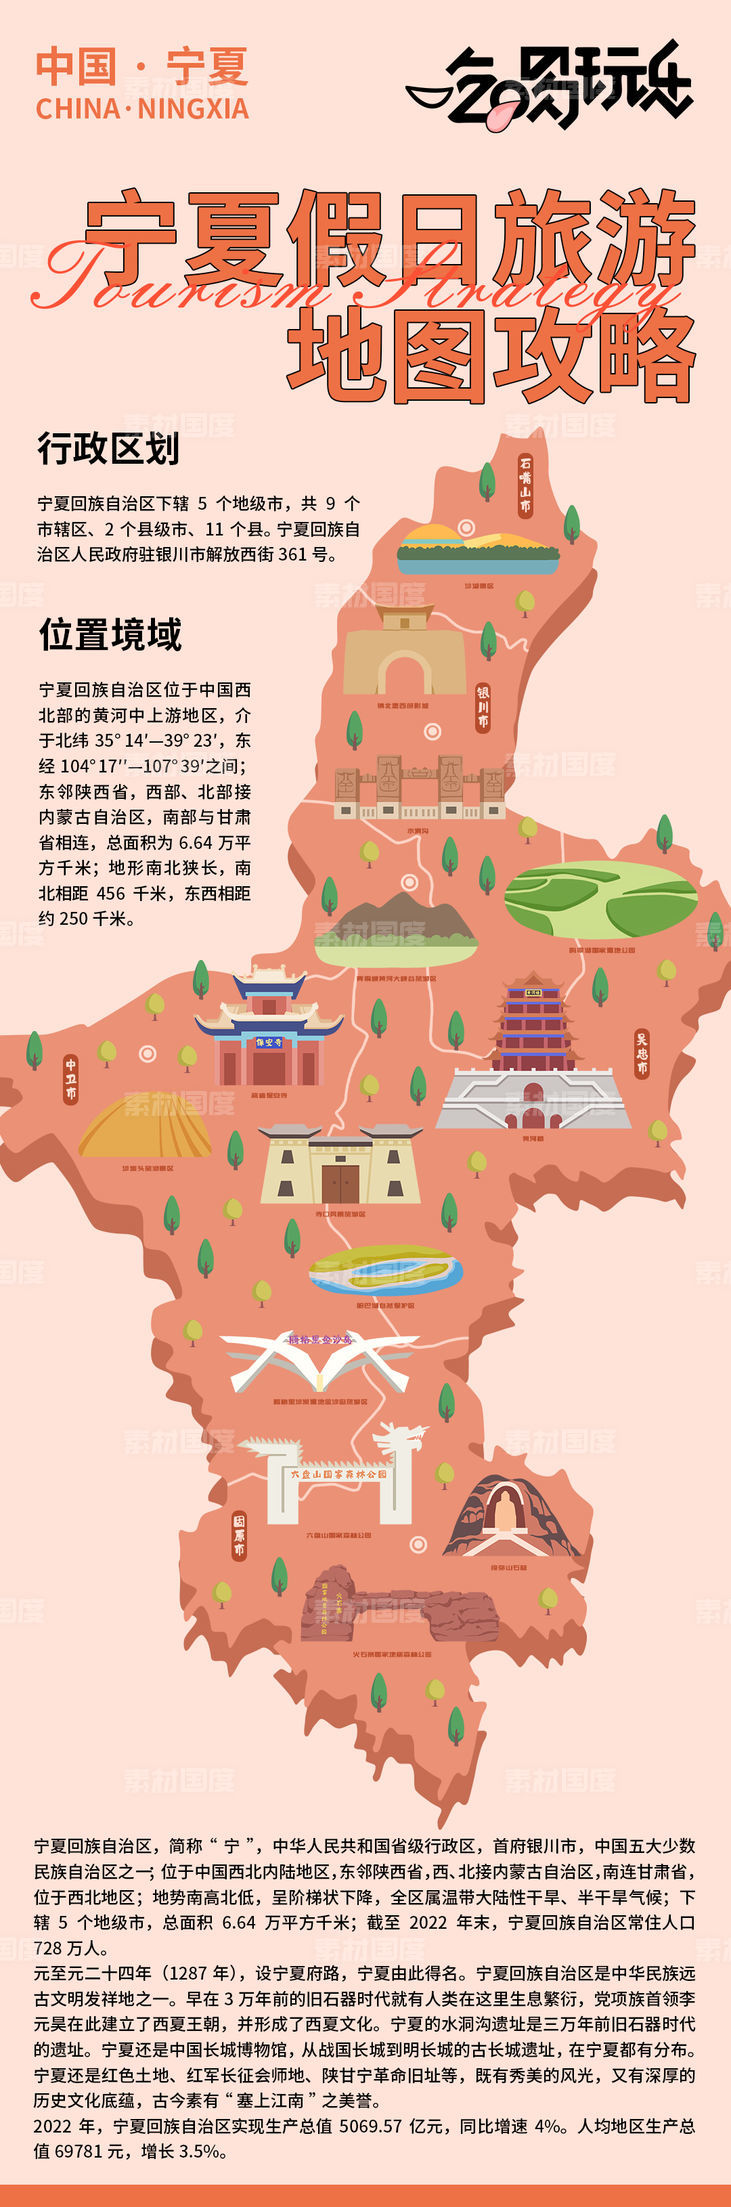 宁夏假日旅游地图攻略海报